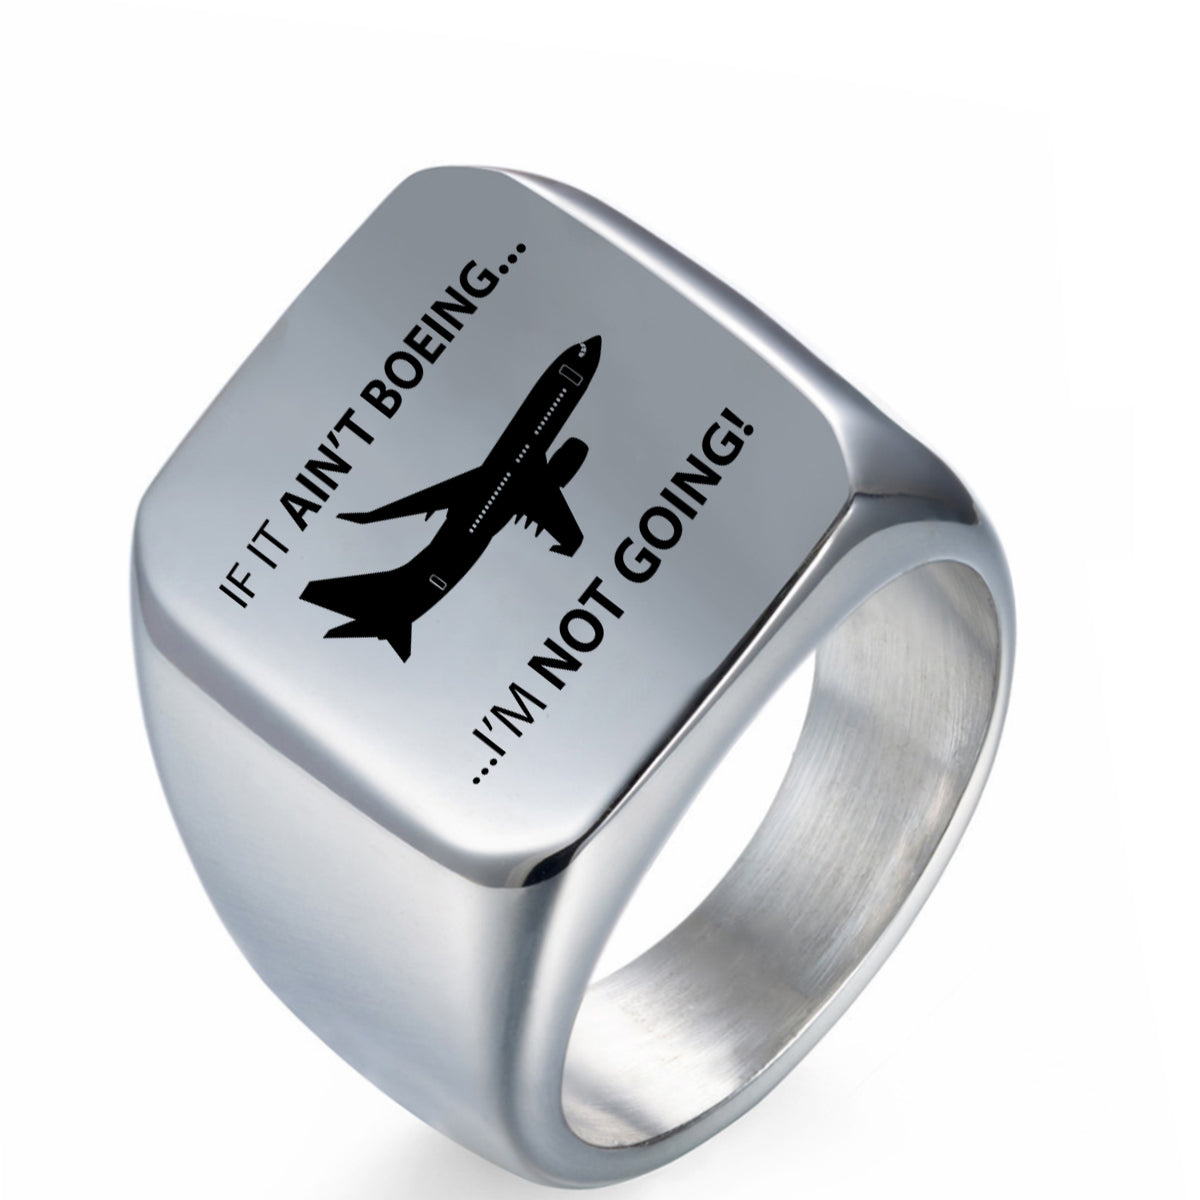 If It Ain't Boeing I'm Not Going! Designed Men Rings